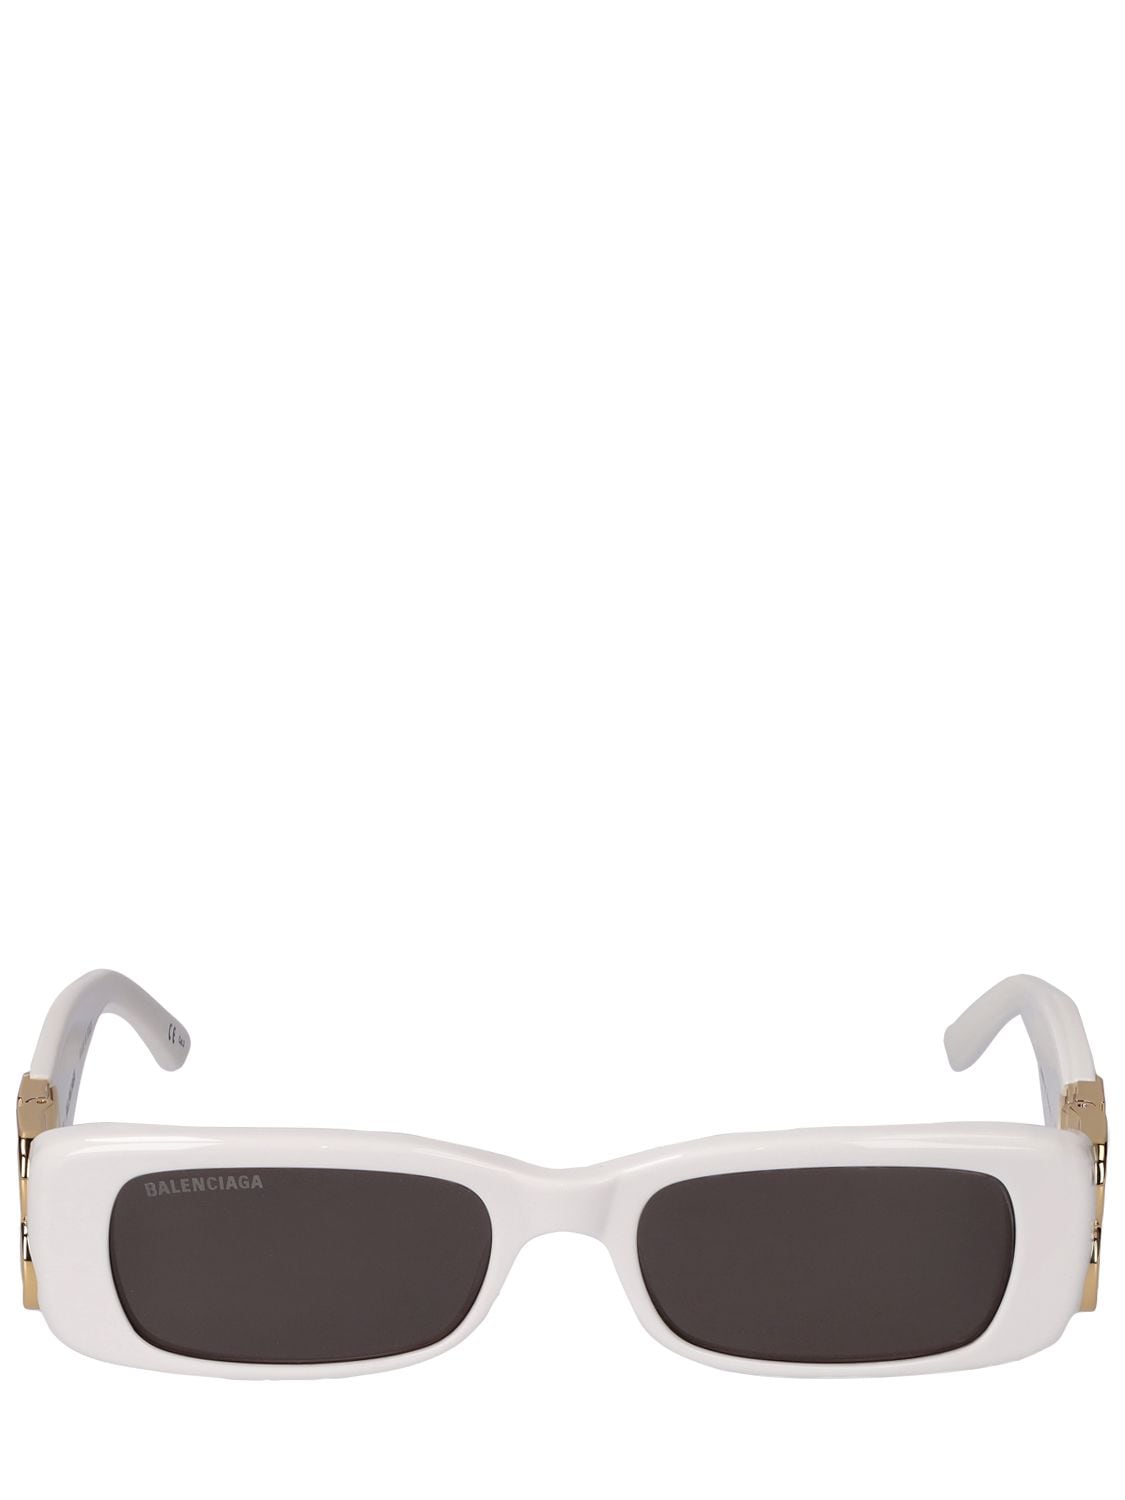 Balenciaga Dynasty Rectangle-frame Sunglasses In White | ModeSens